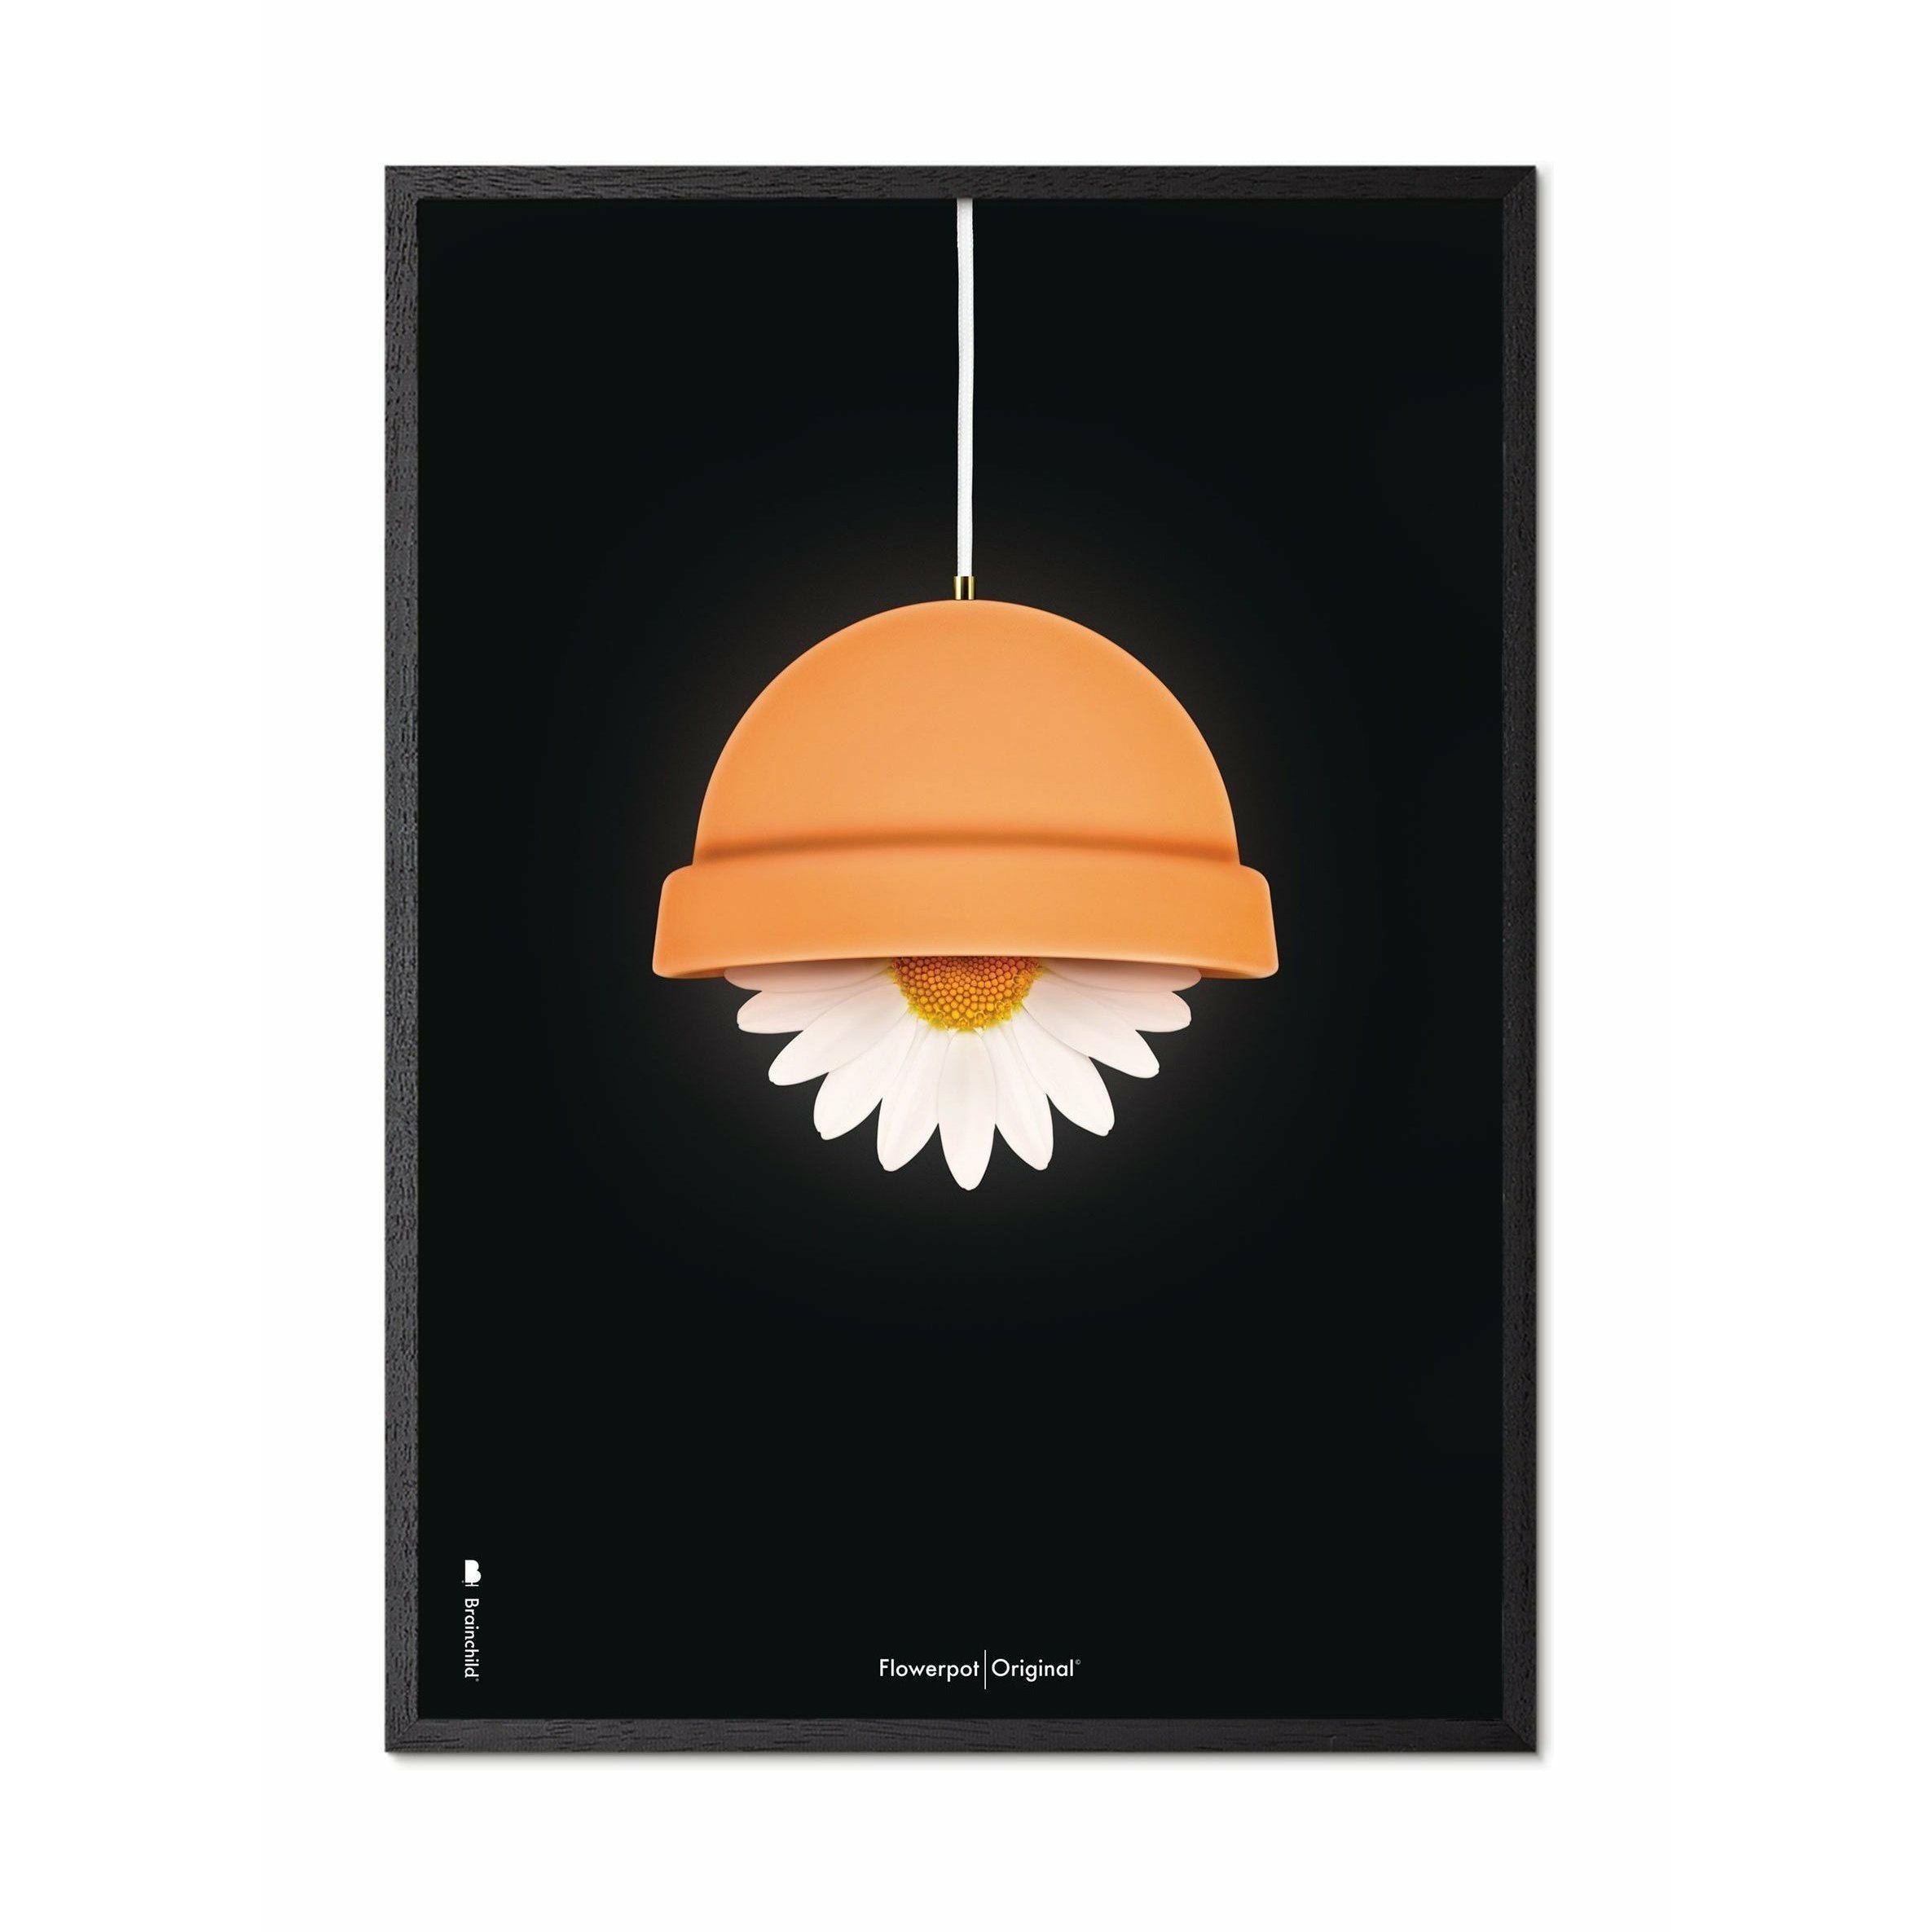 Klasický plakát Brainchild Flowerpot, rám v černém lakovaném dřevu 30x40 cm, černé pozadí